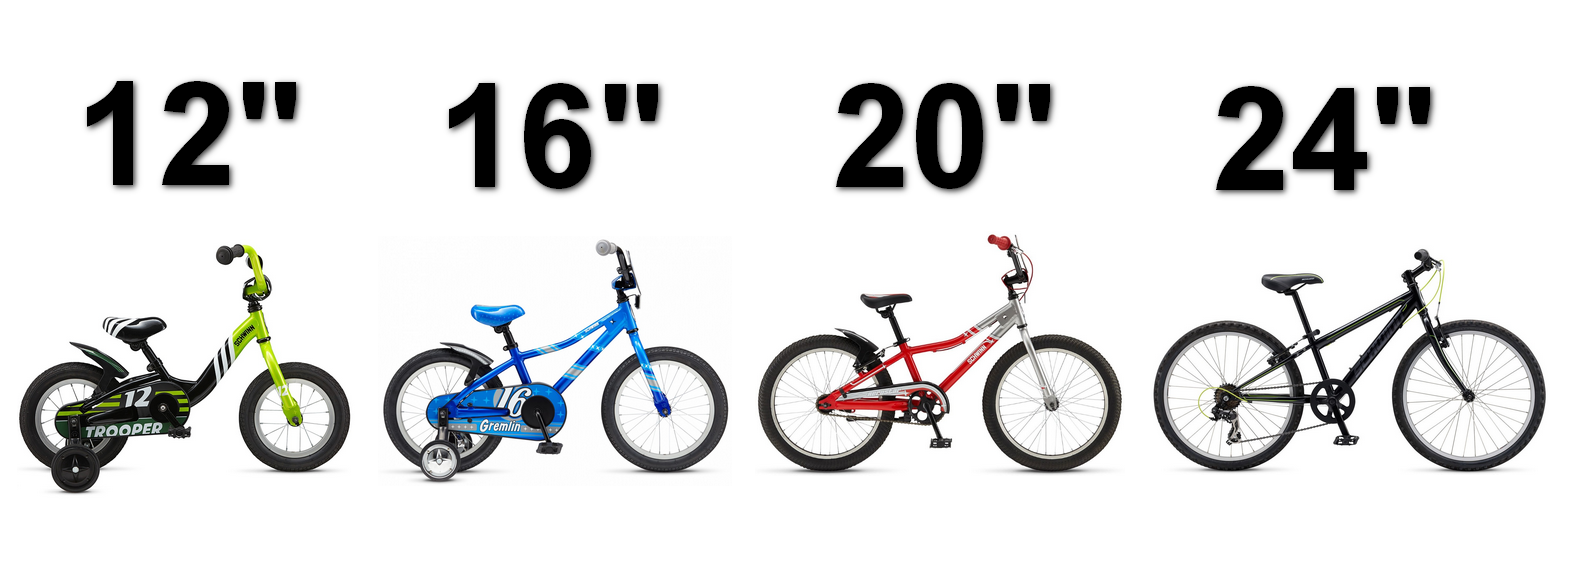 Как подобрать велосипед по росту и весу, таблица для детей, подсказки